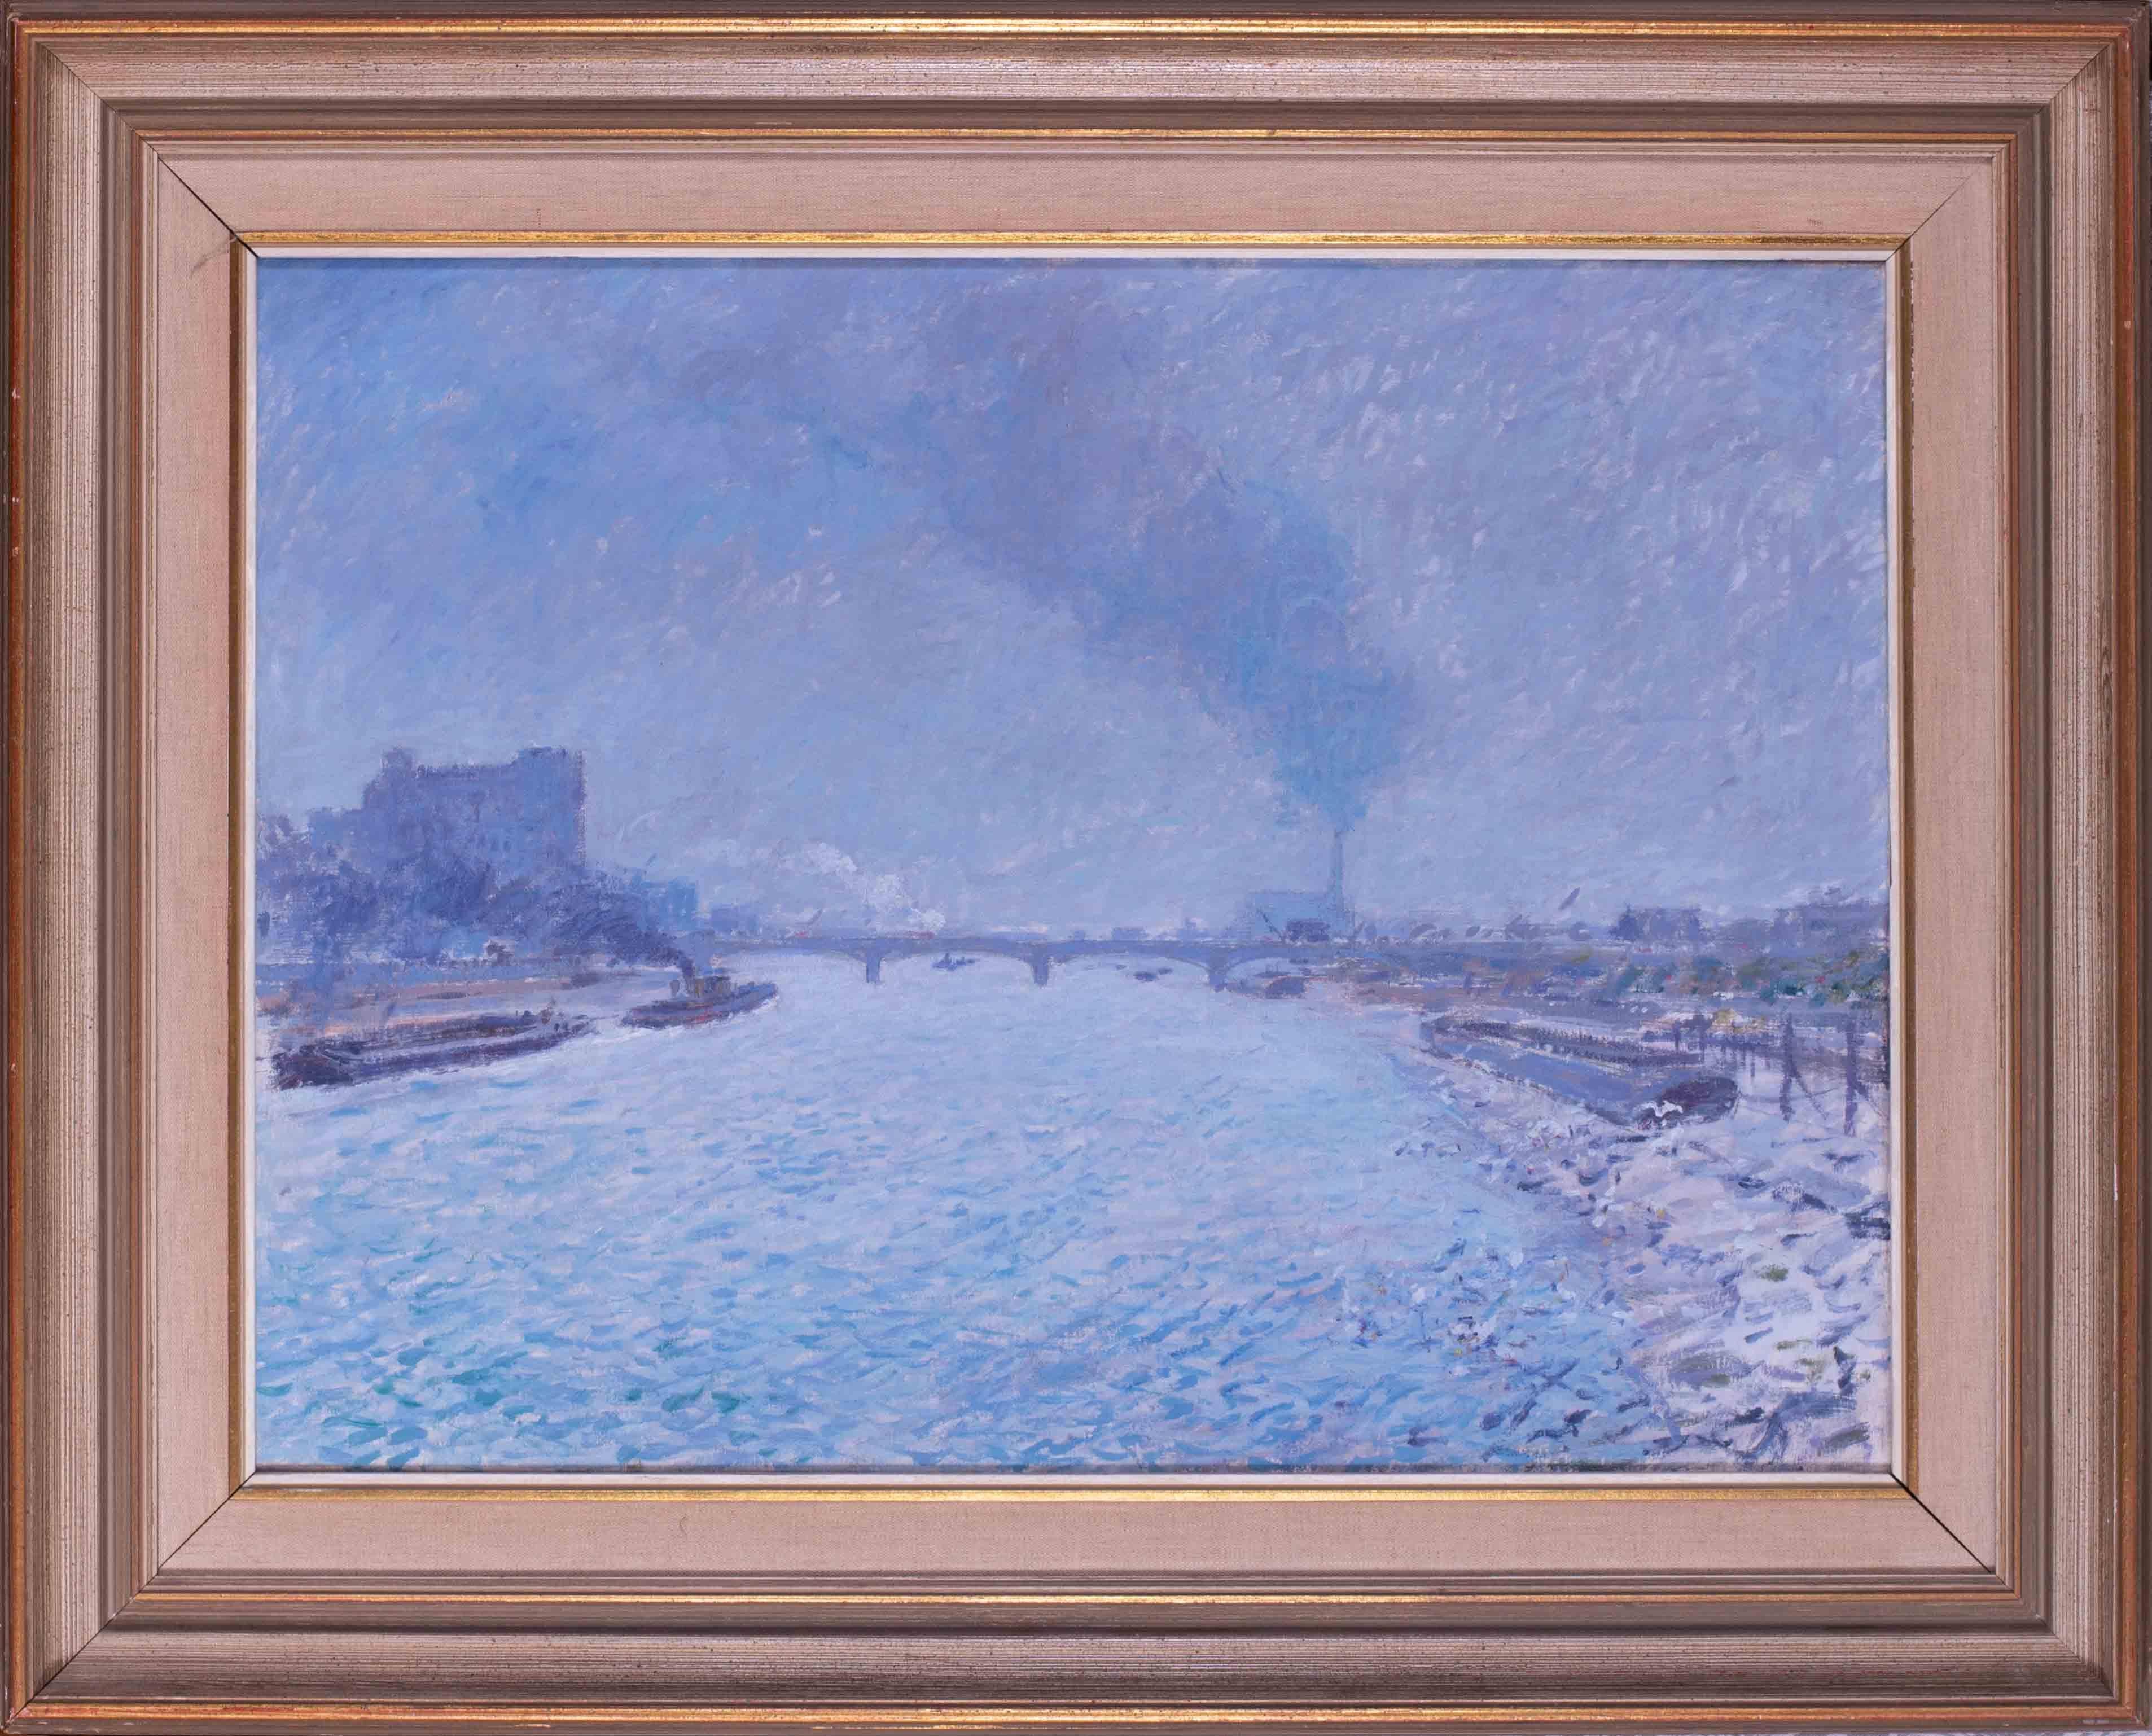 Derick Mynott  Landscape Painting – Britisches impressionistisches Gemälde der Themse des 20. Jahrhunderts, London, in blauen Tönen